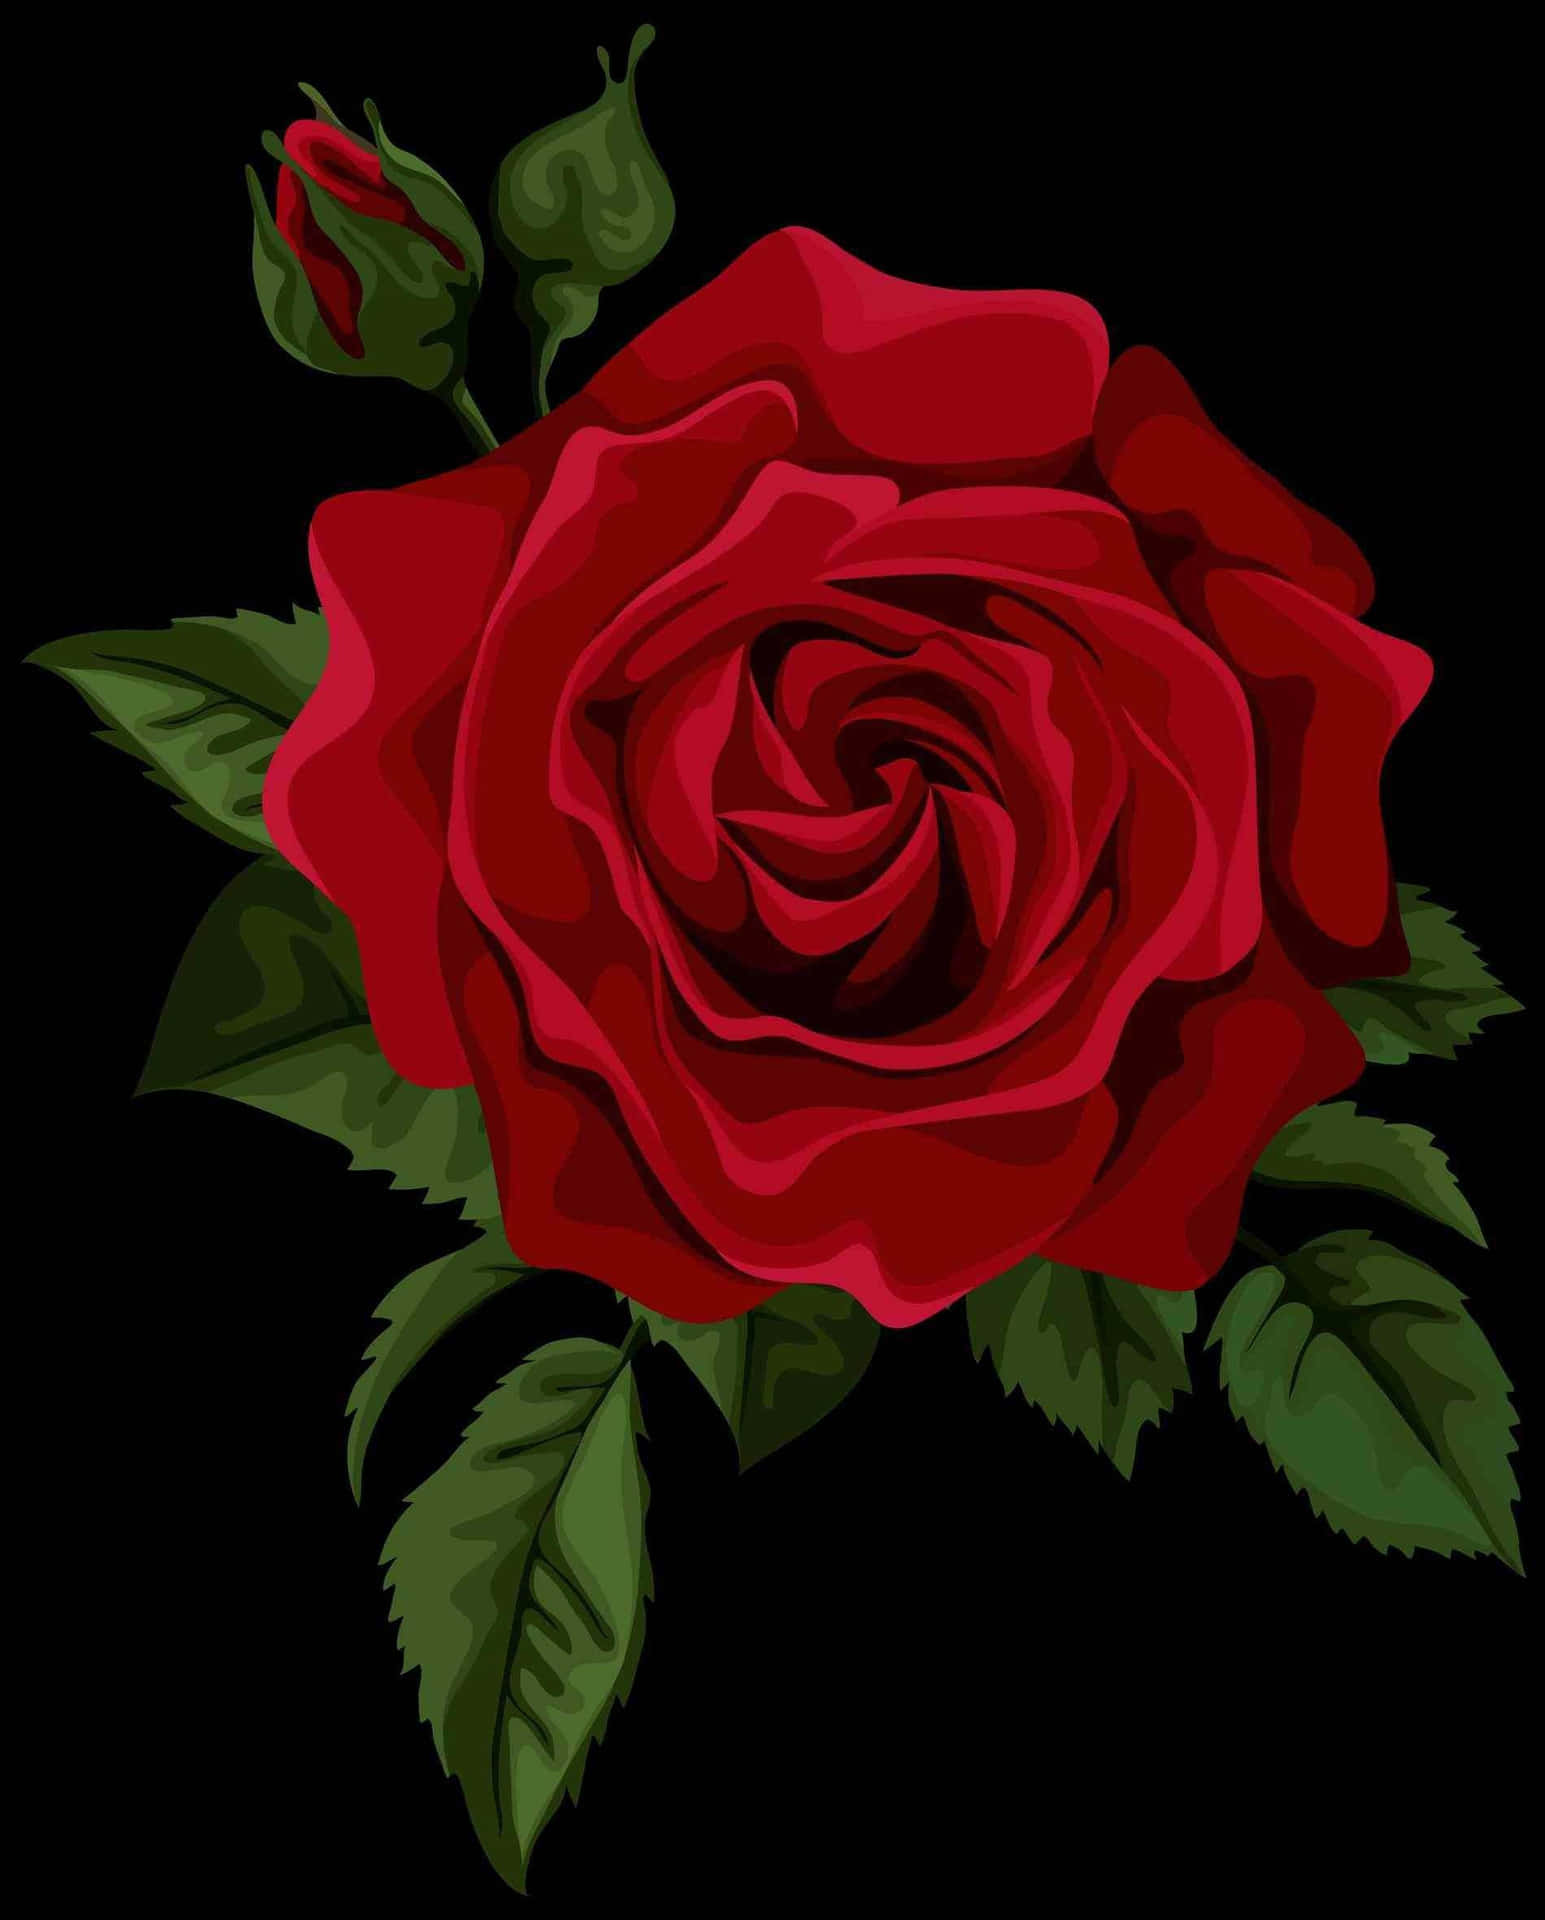 En levende og smuk rose står ud blandt floraen i en have.